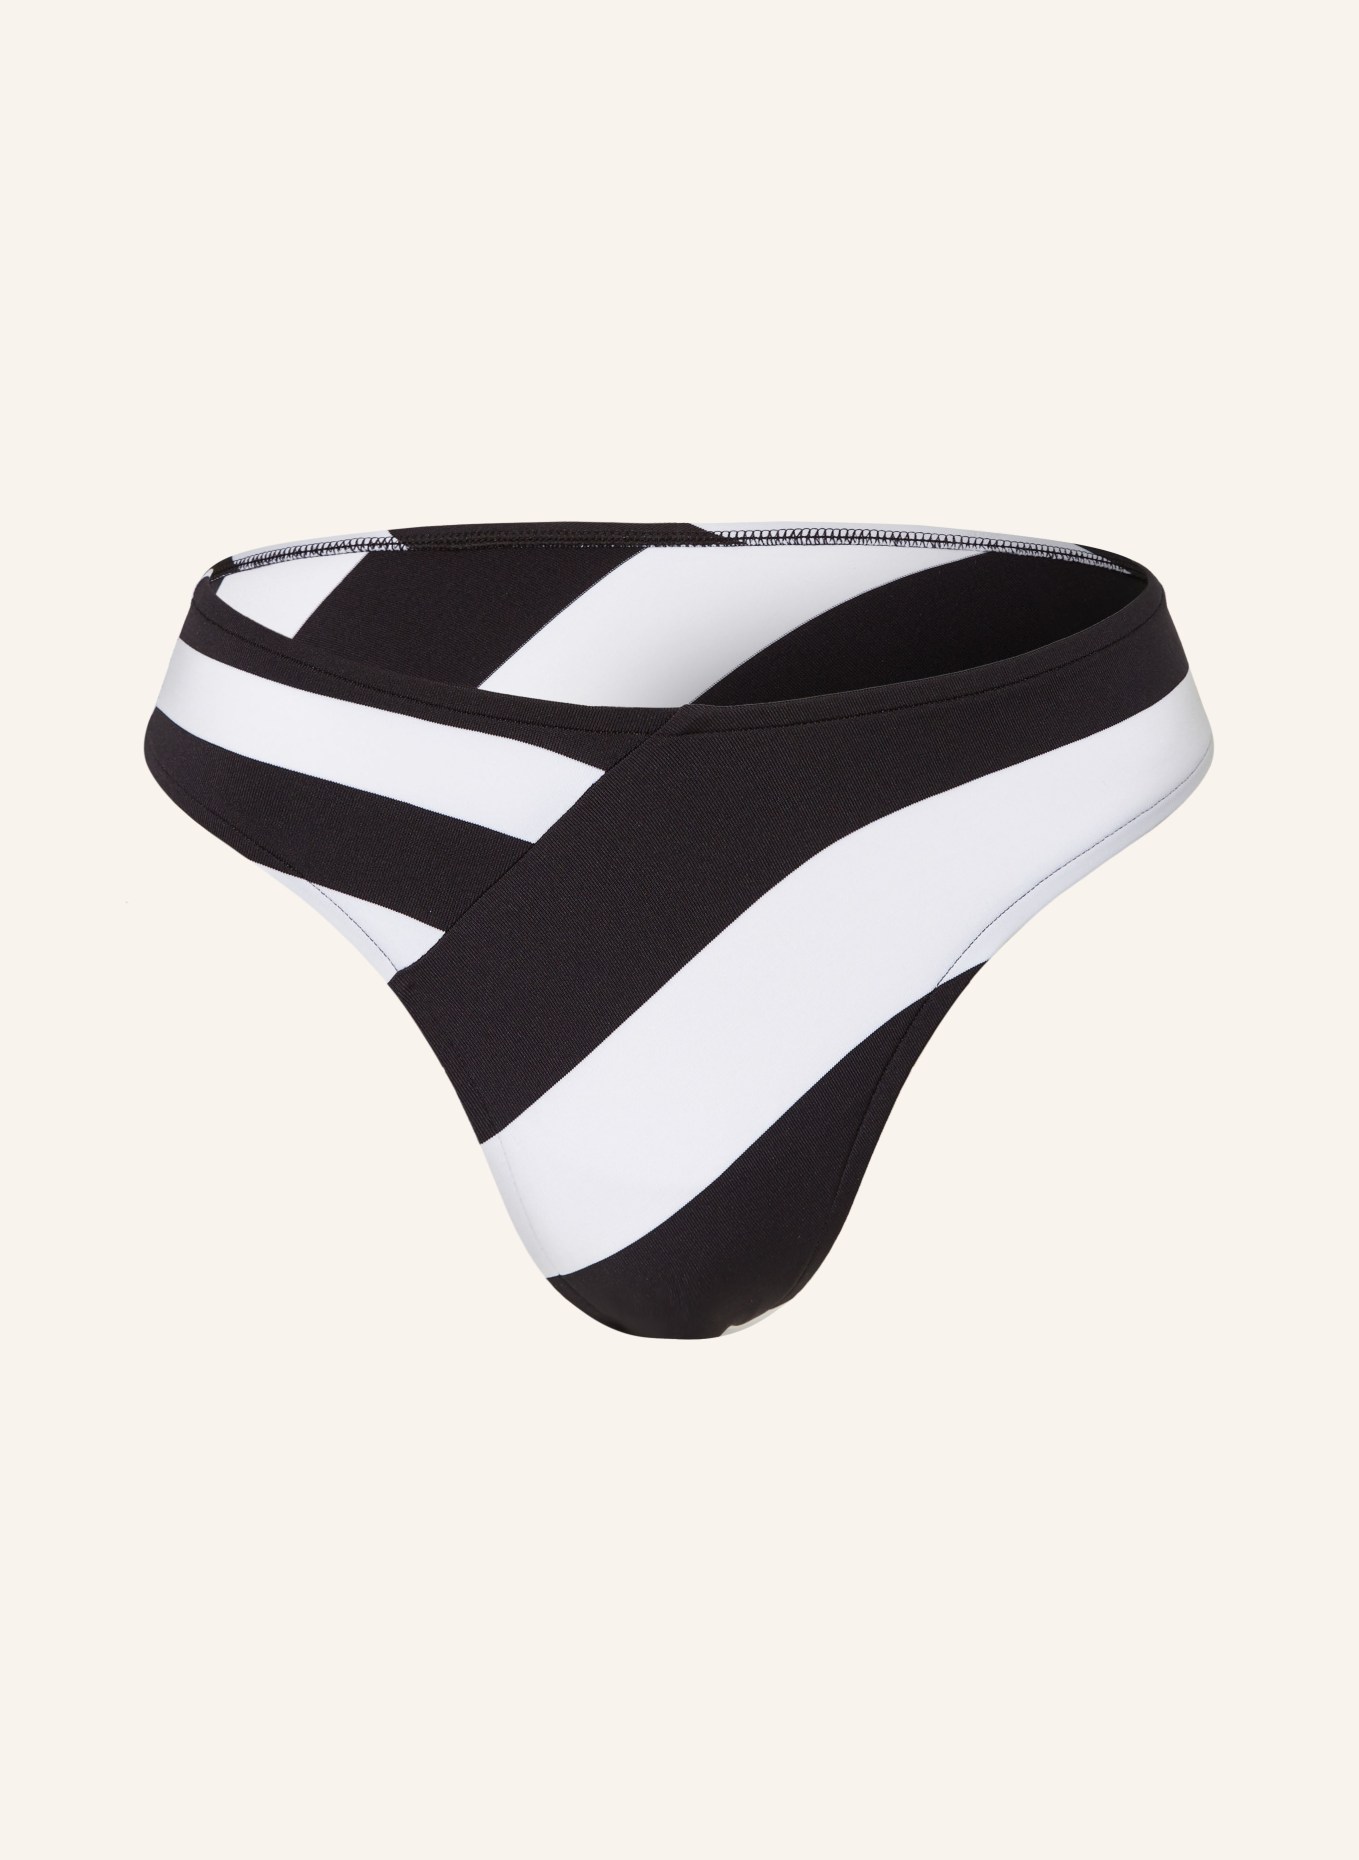 ANDRES SARDA Panty bikini brief MAGGIE, Color: BLACK/ WHITE (Image 1)